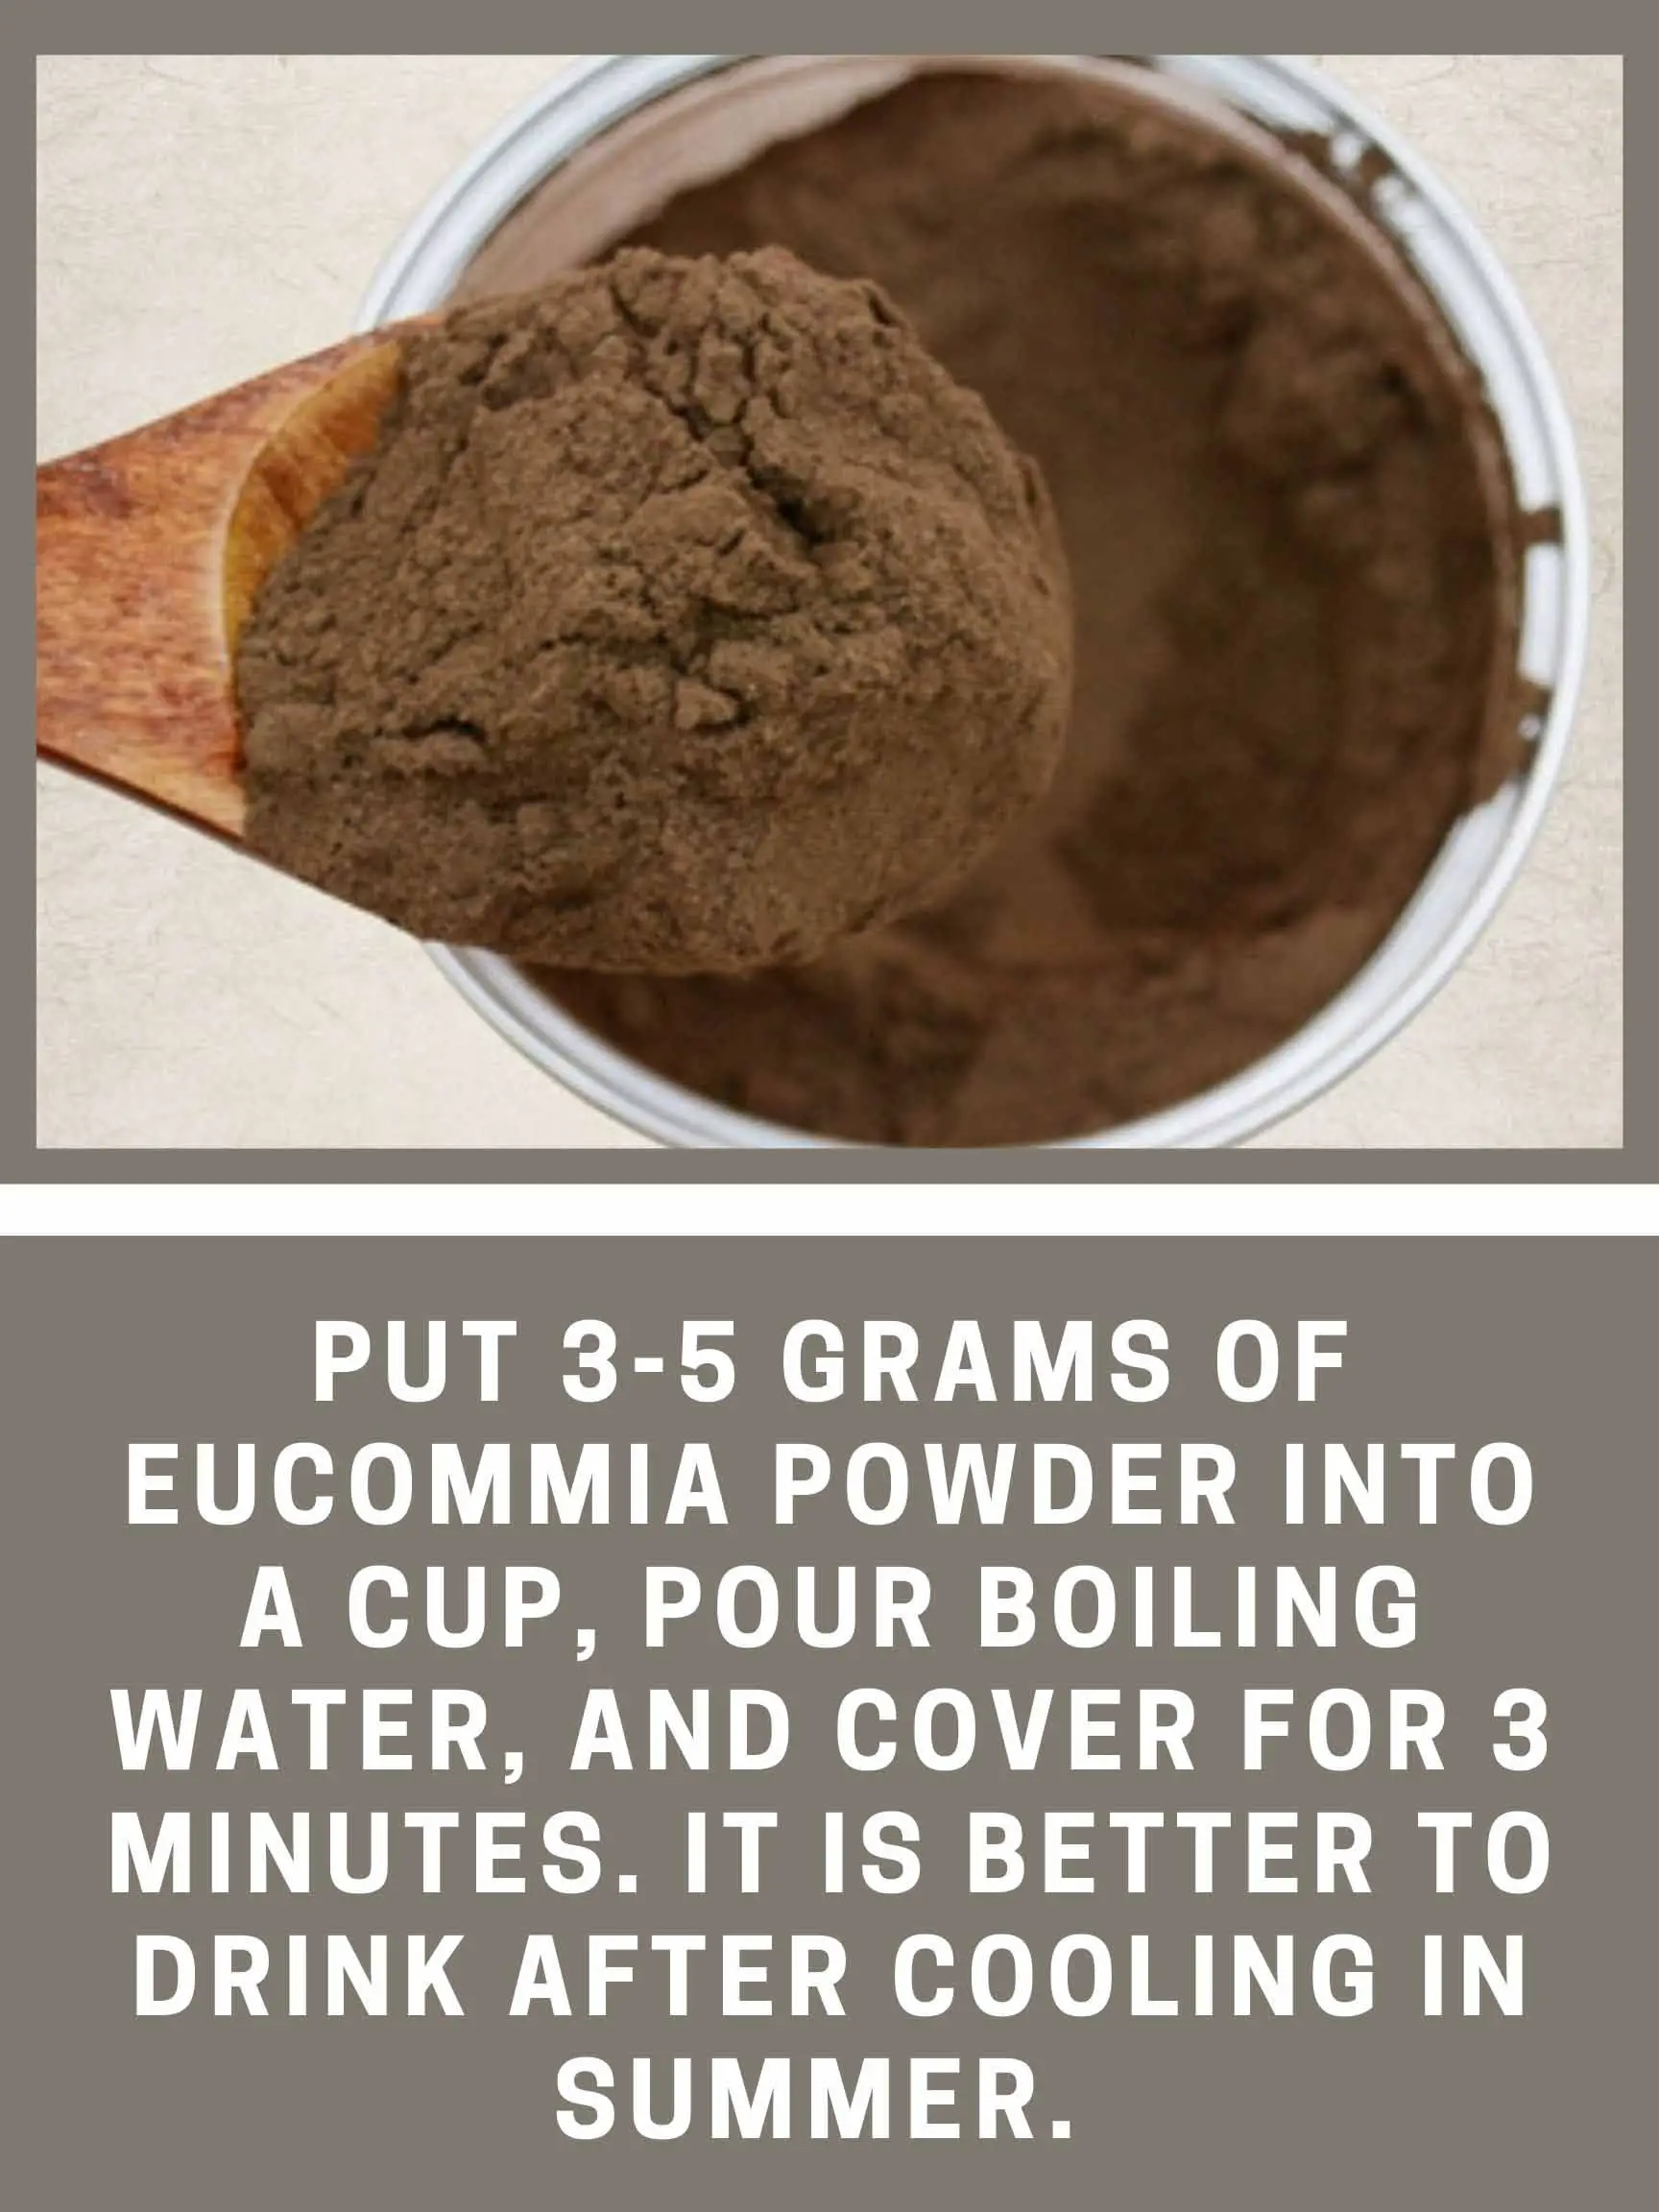 How to eat eucommia powder